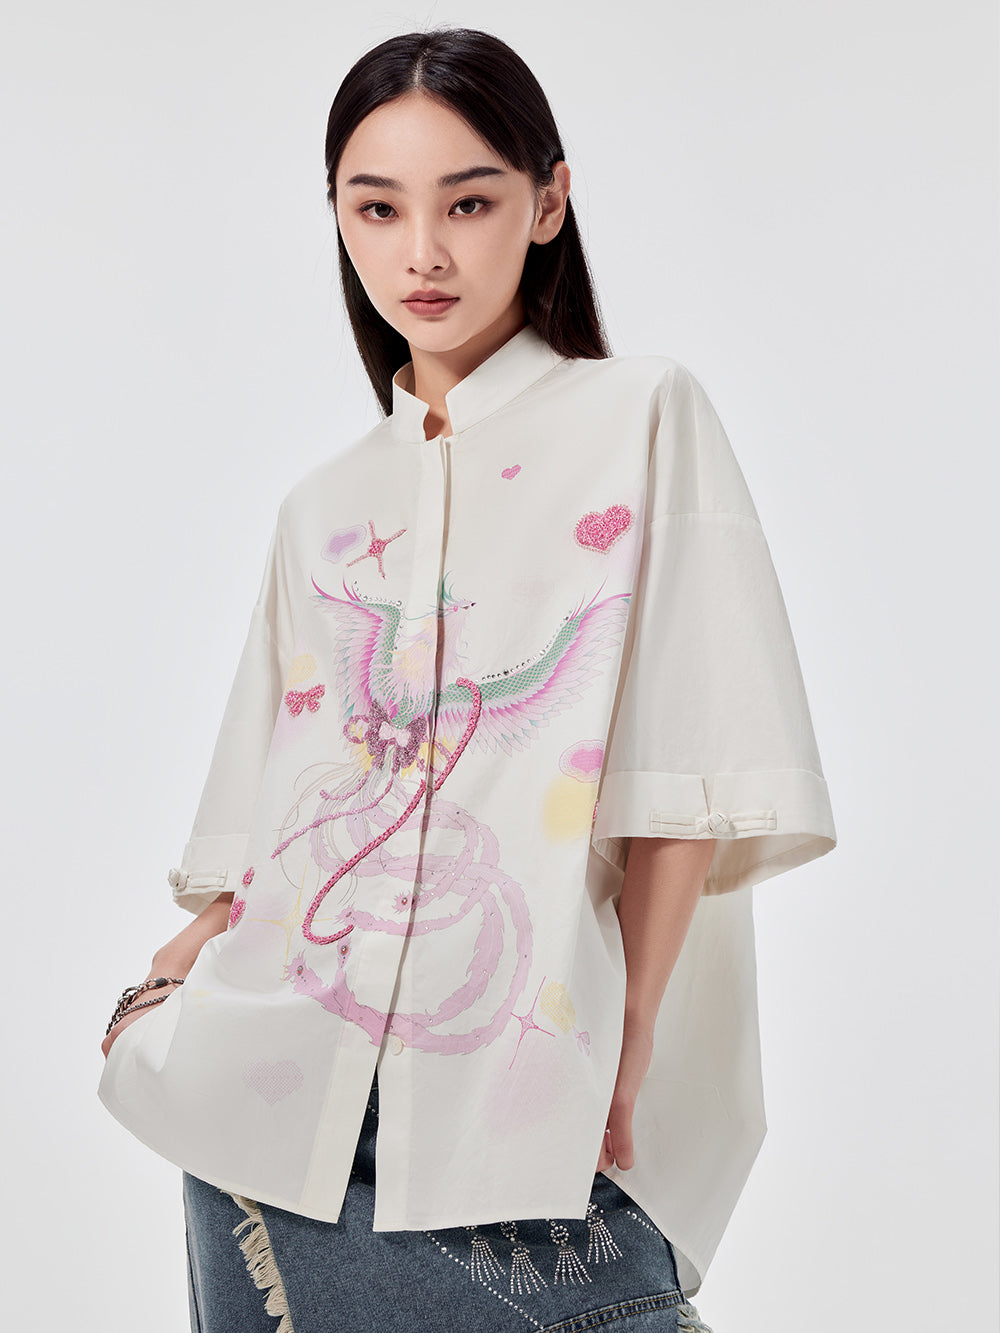 MUKZIN Chinese Stand Collar Printed Shirt